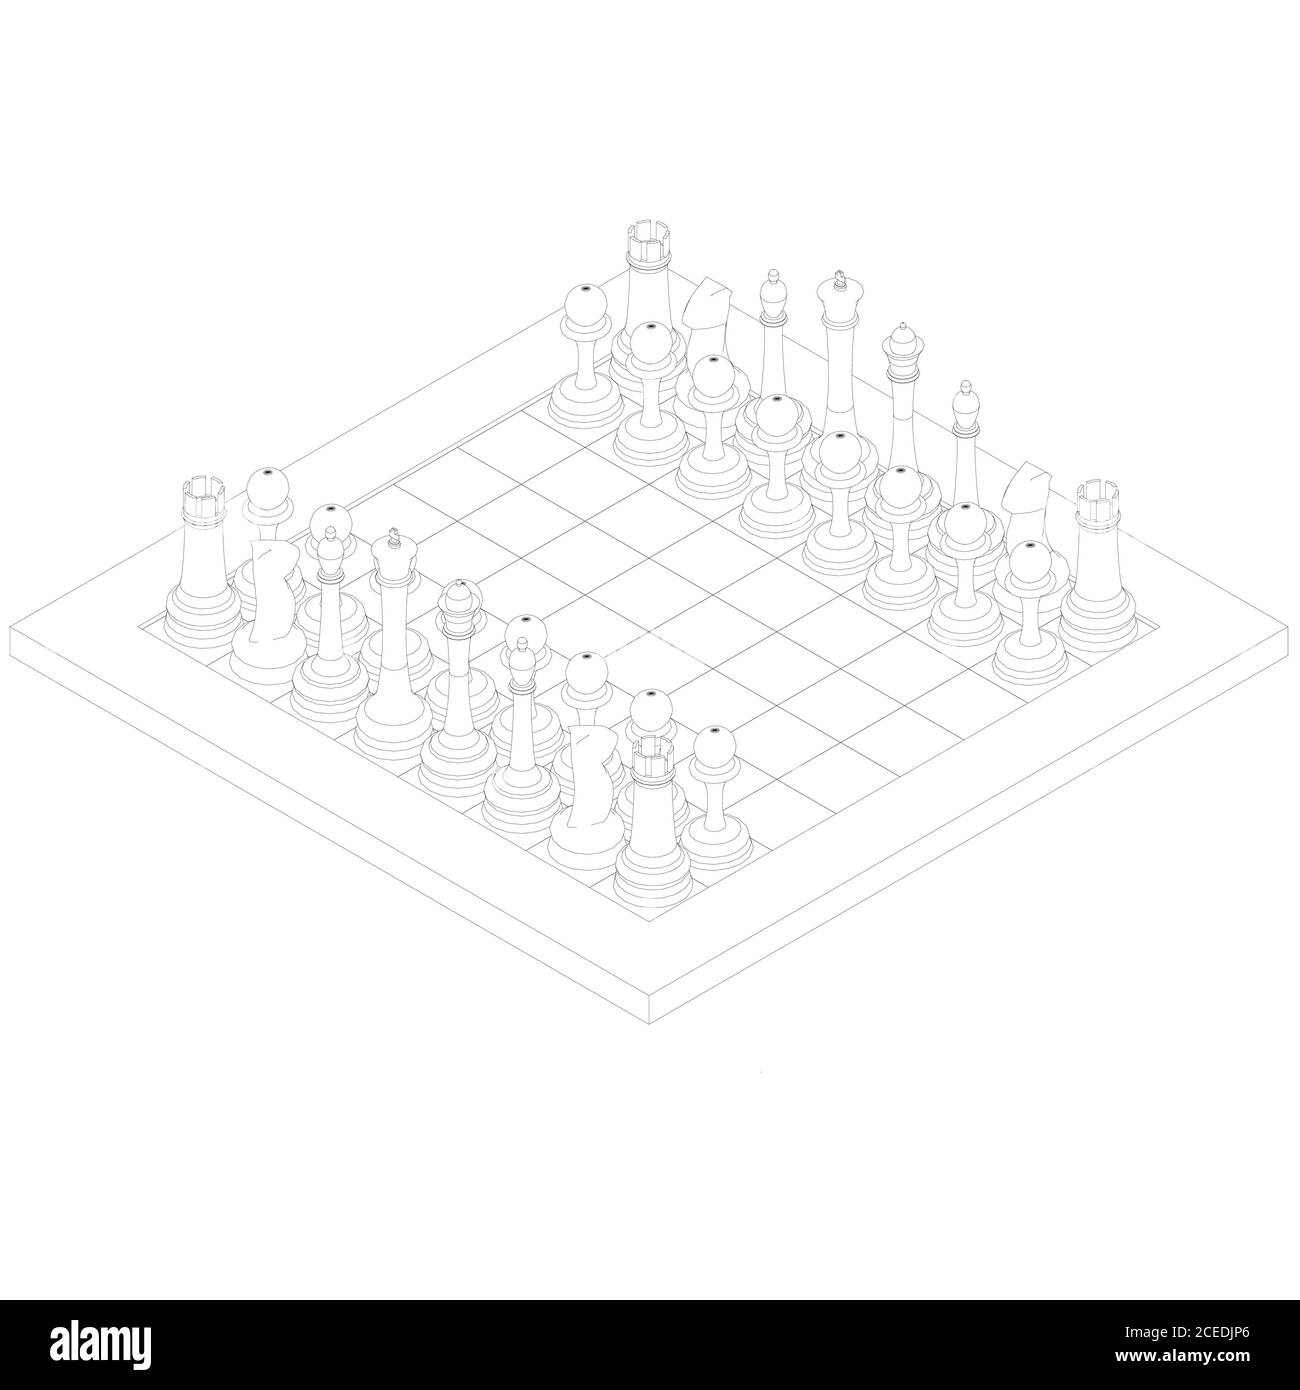 Contorno de un tablero de ajedrez con líneas negras sobre fondo blanco. Vista isométrica. Ilustración vectorial Ilustración del Vector